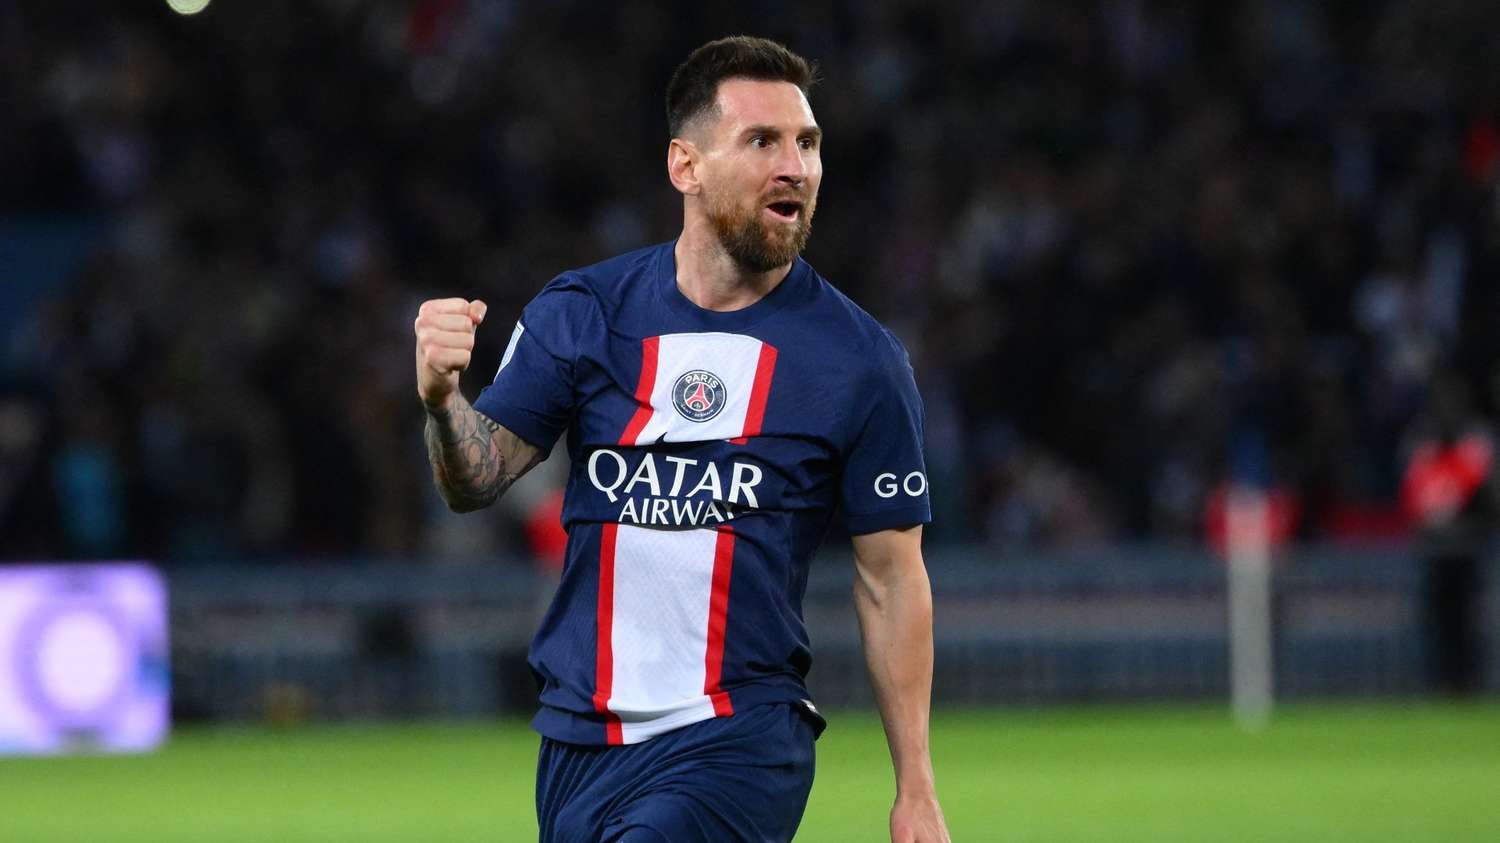 La familia de Messi habló sobre el futuro de Lionel